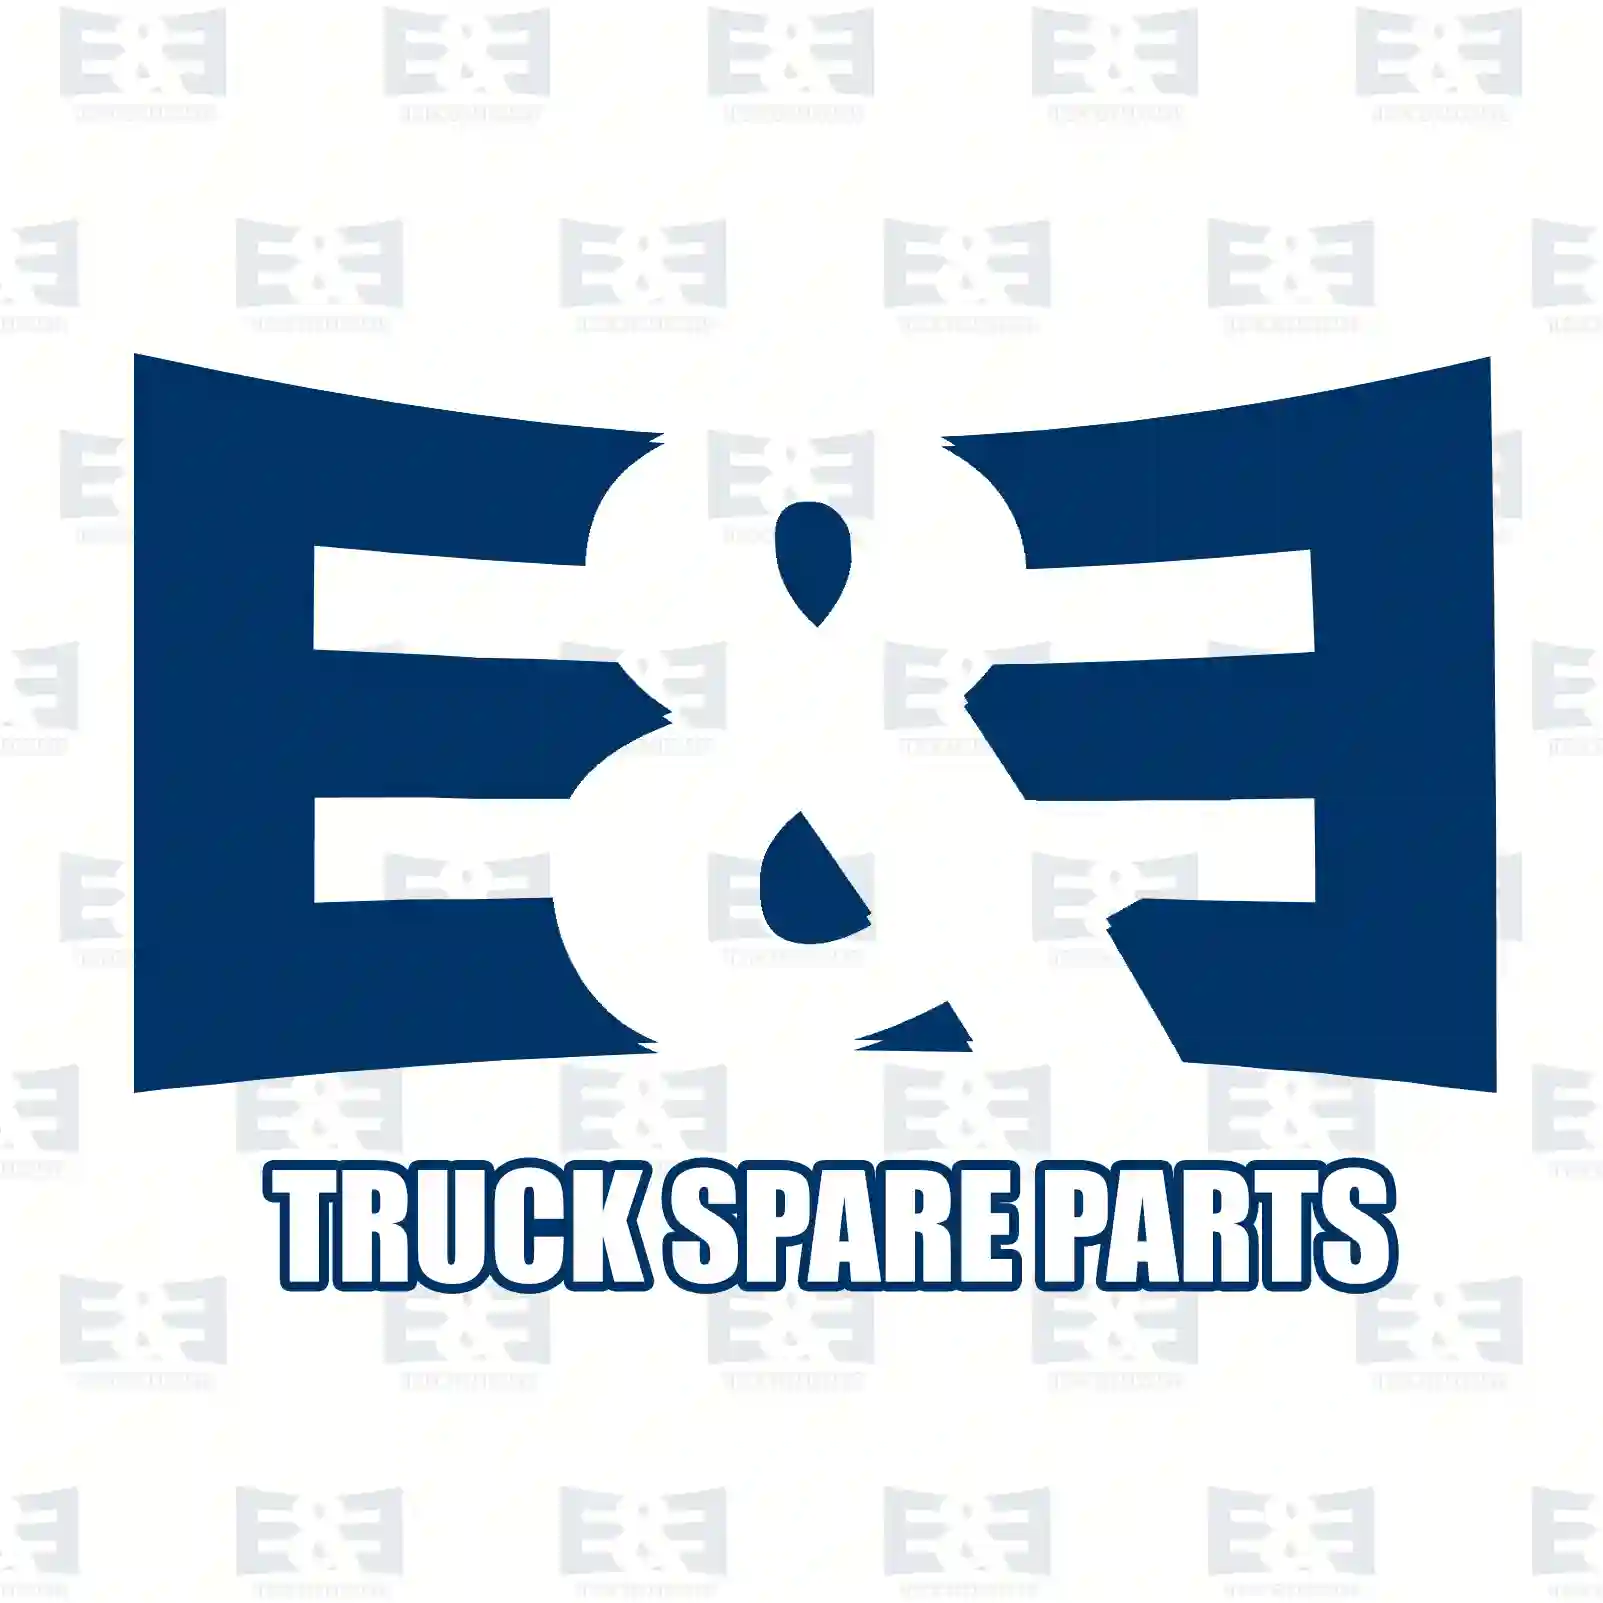 Oil seal, 2E2277934, 1347020, 1405146, 1407724, ZG02620-0008 ||  2E2277934 E&E Truck Spare Parts | Truck Spare Parts, Auotomotive Spare Parts Oil seal, 2E2277934, 1347020, 1405146, 1407724, ZG02620-0008 ||  2E2277934 E&E Truck Spare Parts | Truck Spare Parts, Auotomotive Spare Parts